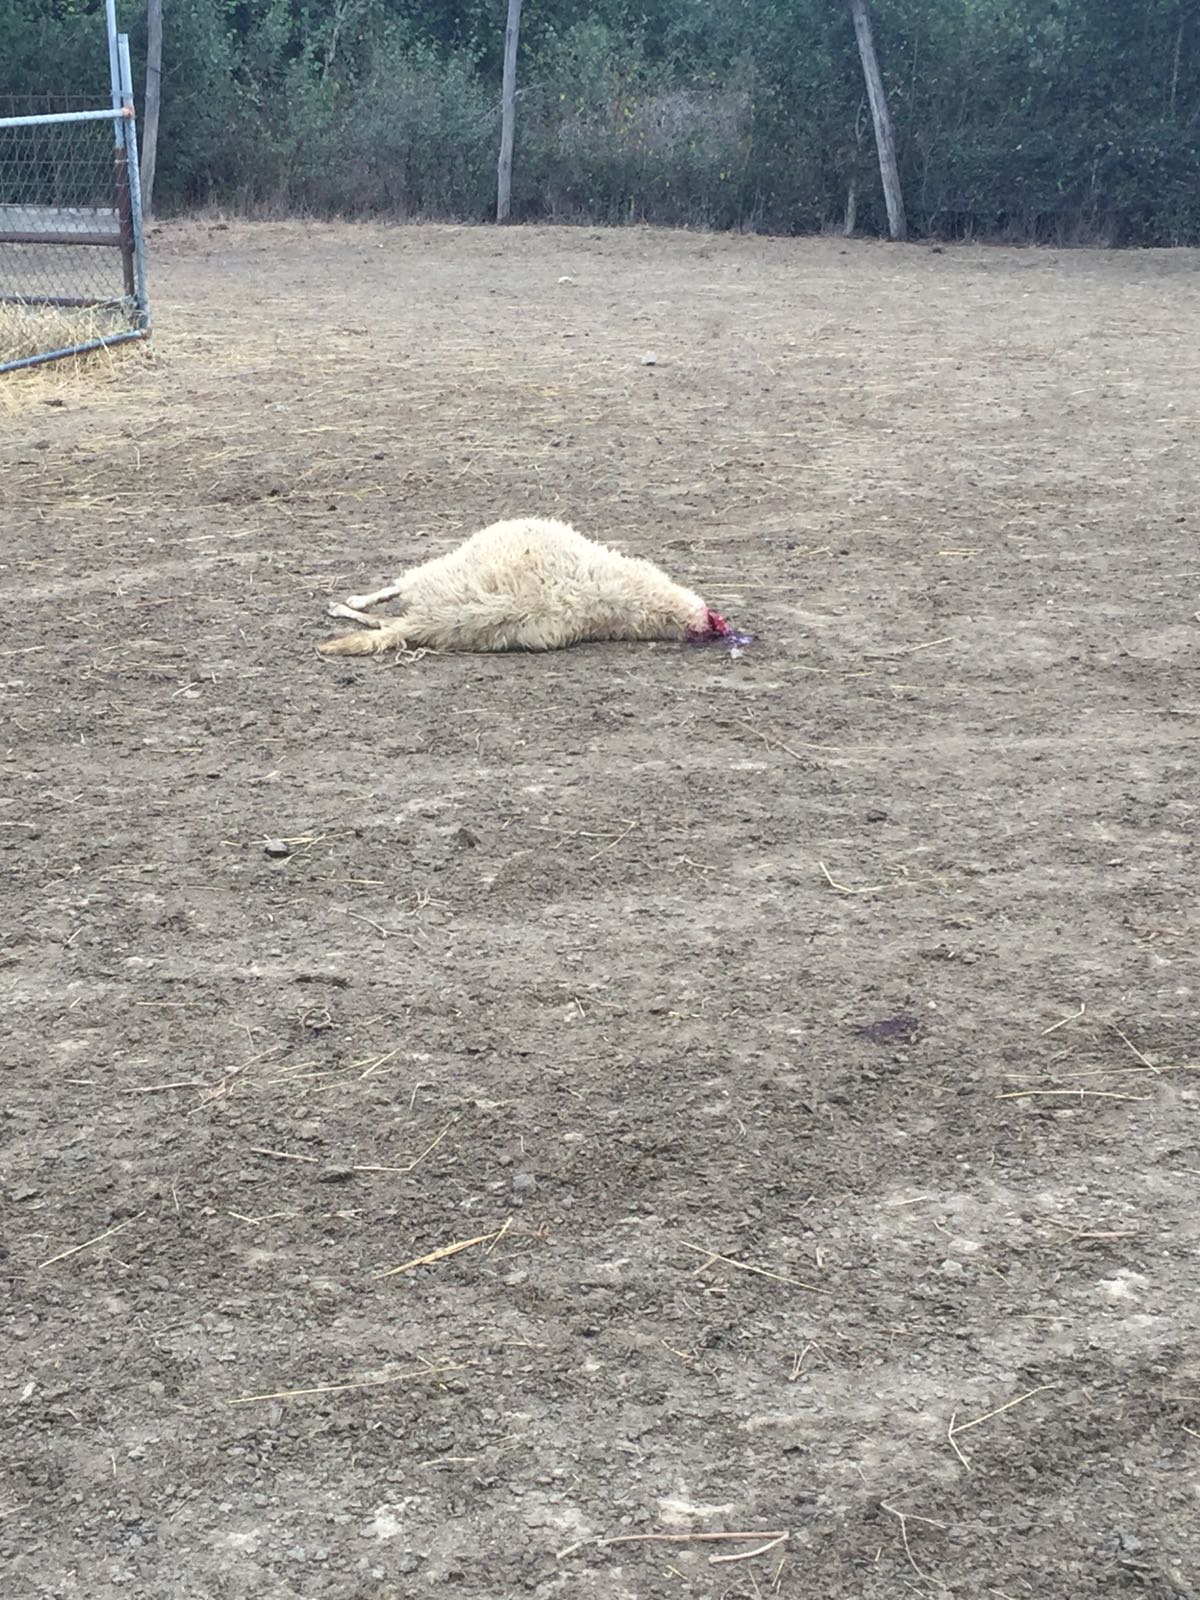 Esposto animalisti su strage di pecore, Coldiretti: "Sciacallaggio"